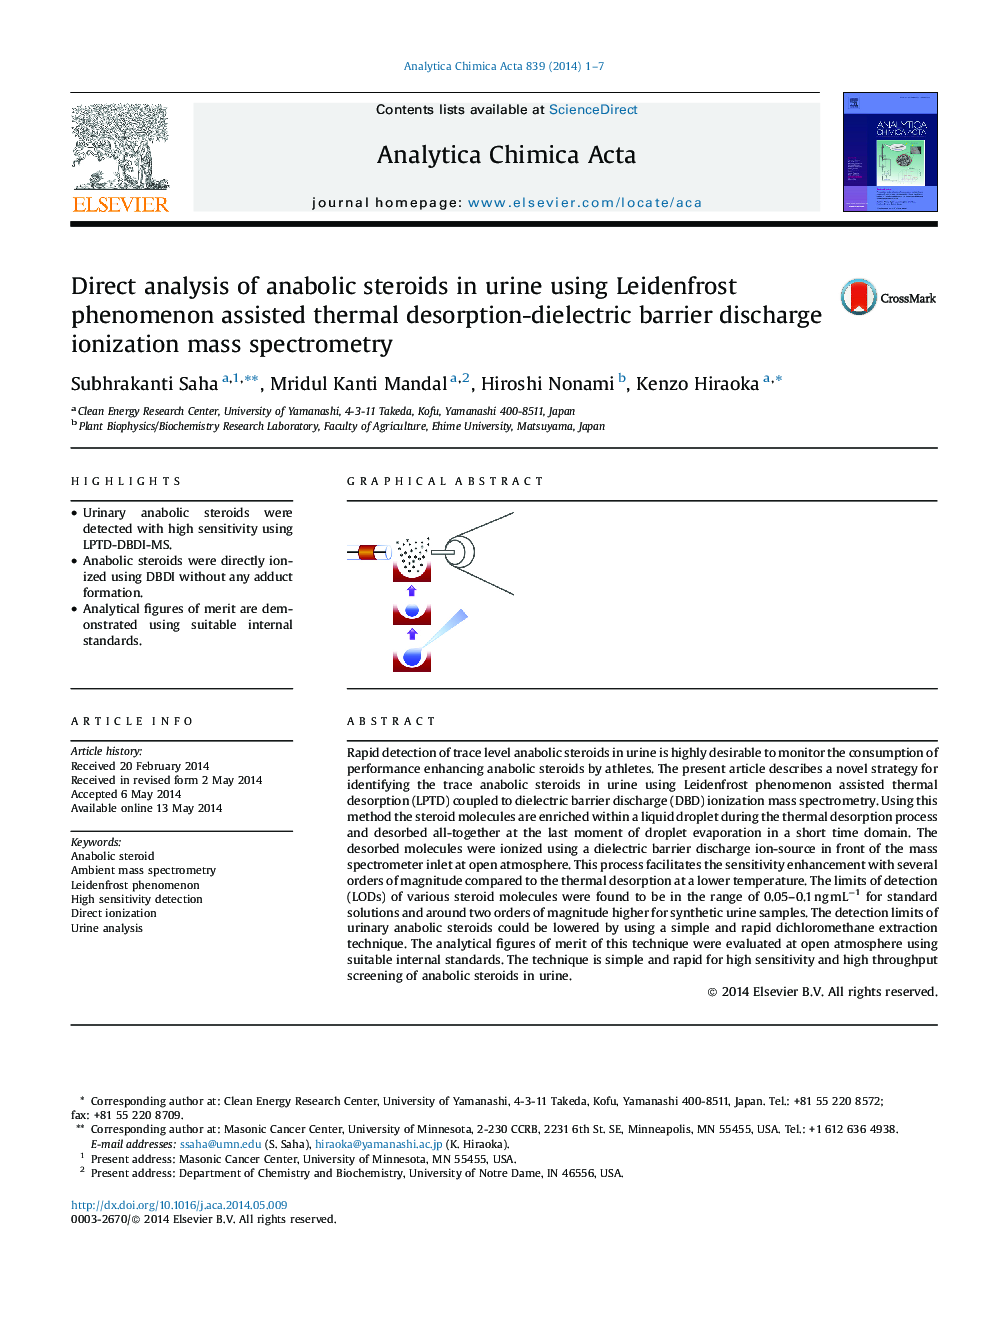 تجزیه و تحلیل مستقیم استروئیدهای آنابولیک در ادرار با استفاده از پدیده لیدنفروست، طیف سنجی جرم یونیزاسیون مانع تخلیه دی اکسید کربن 